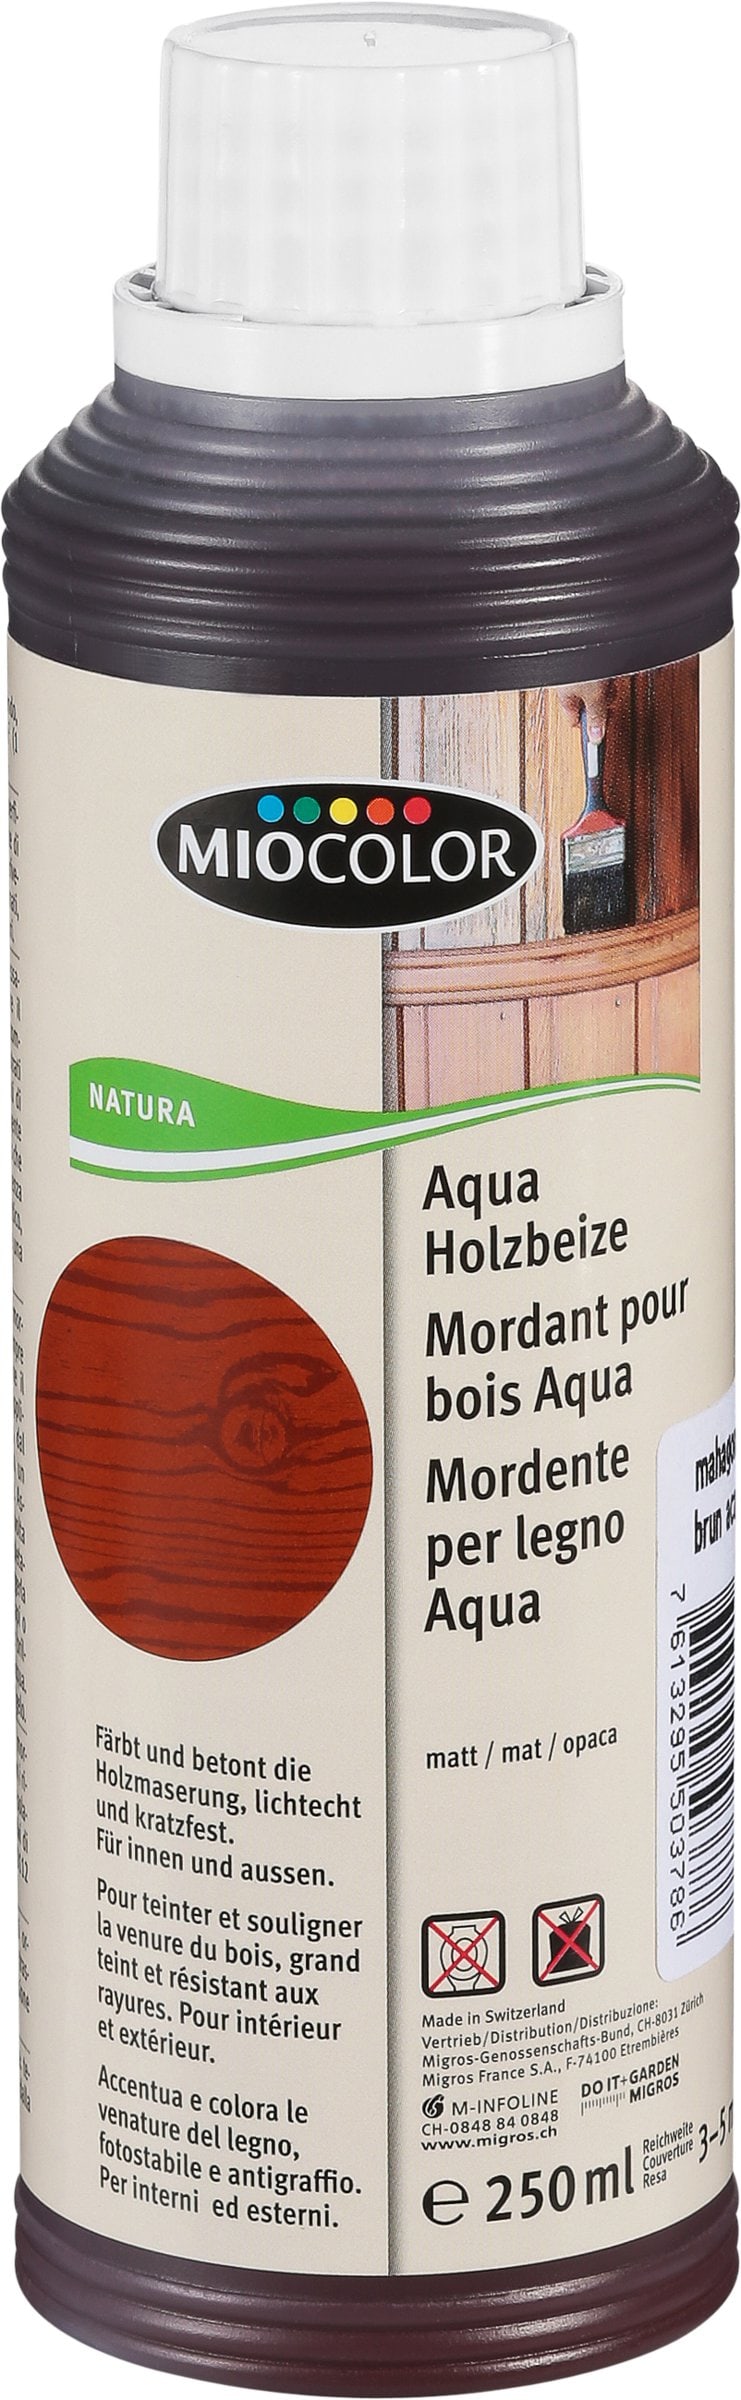 Miocolor Balsamo di cera d'api Incolore 250g Oli + cere per legno